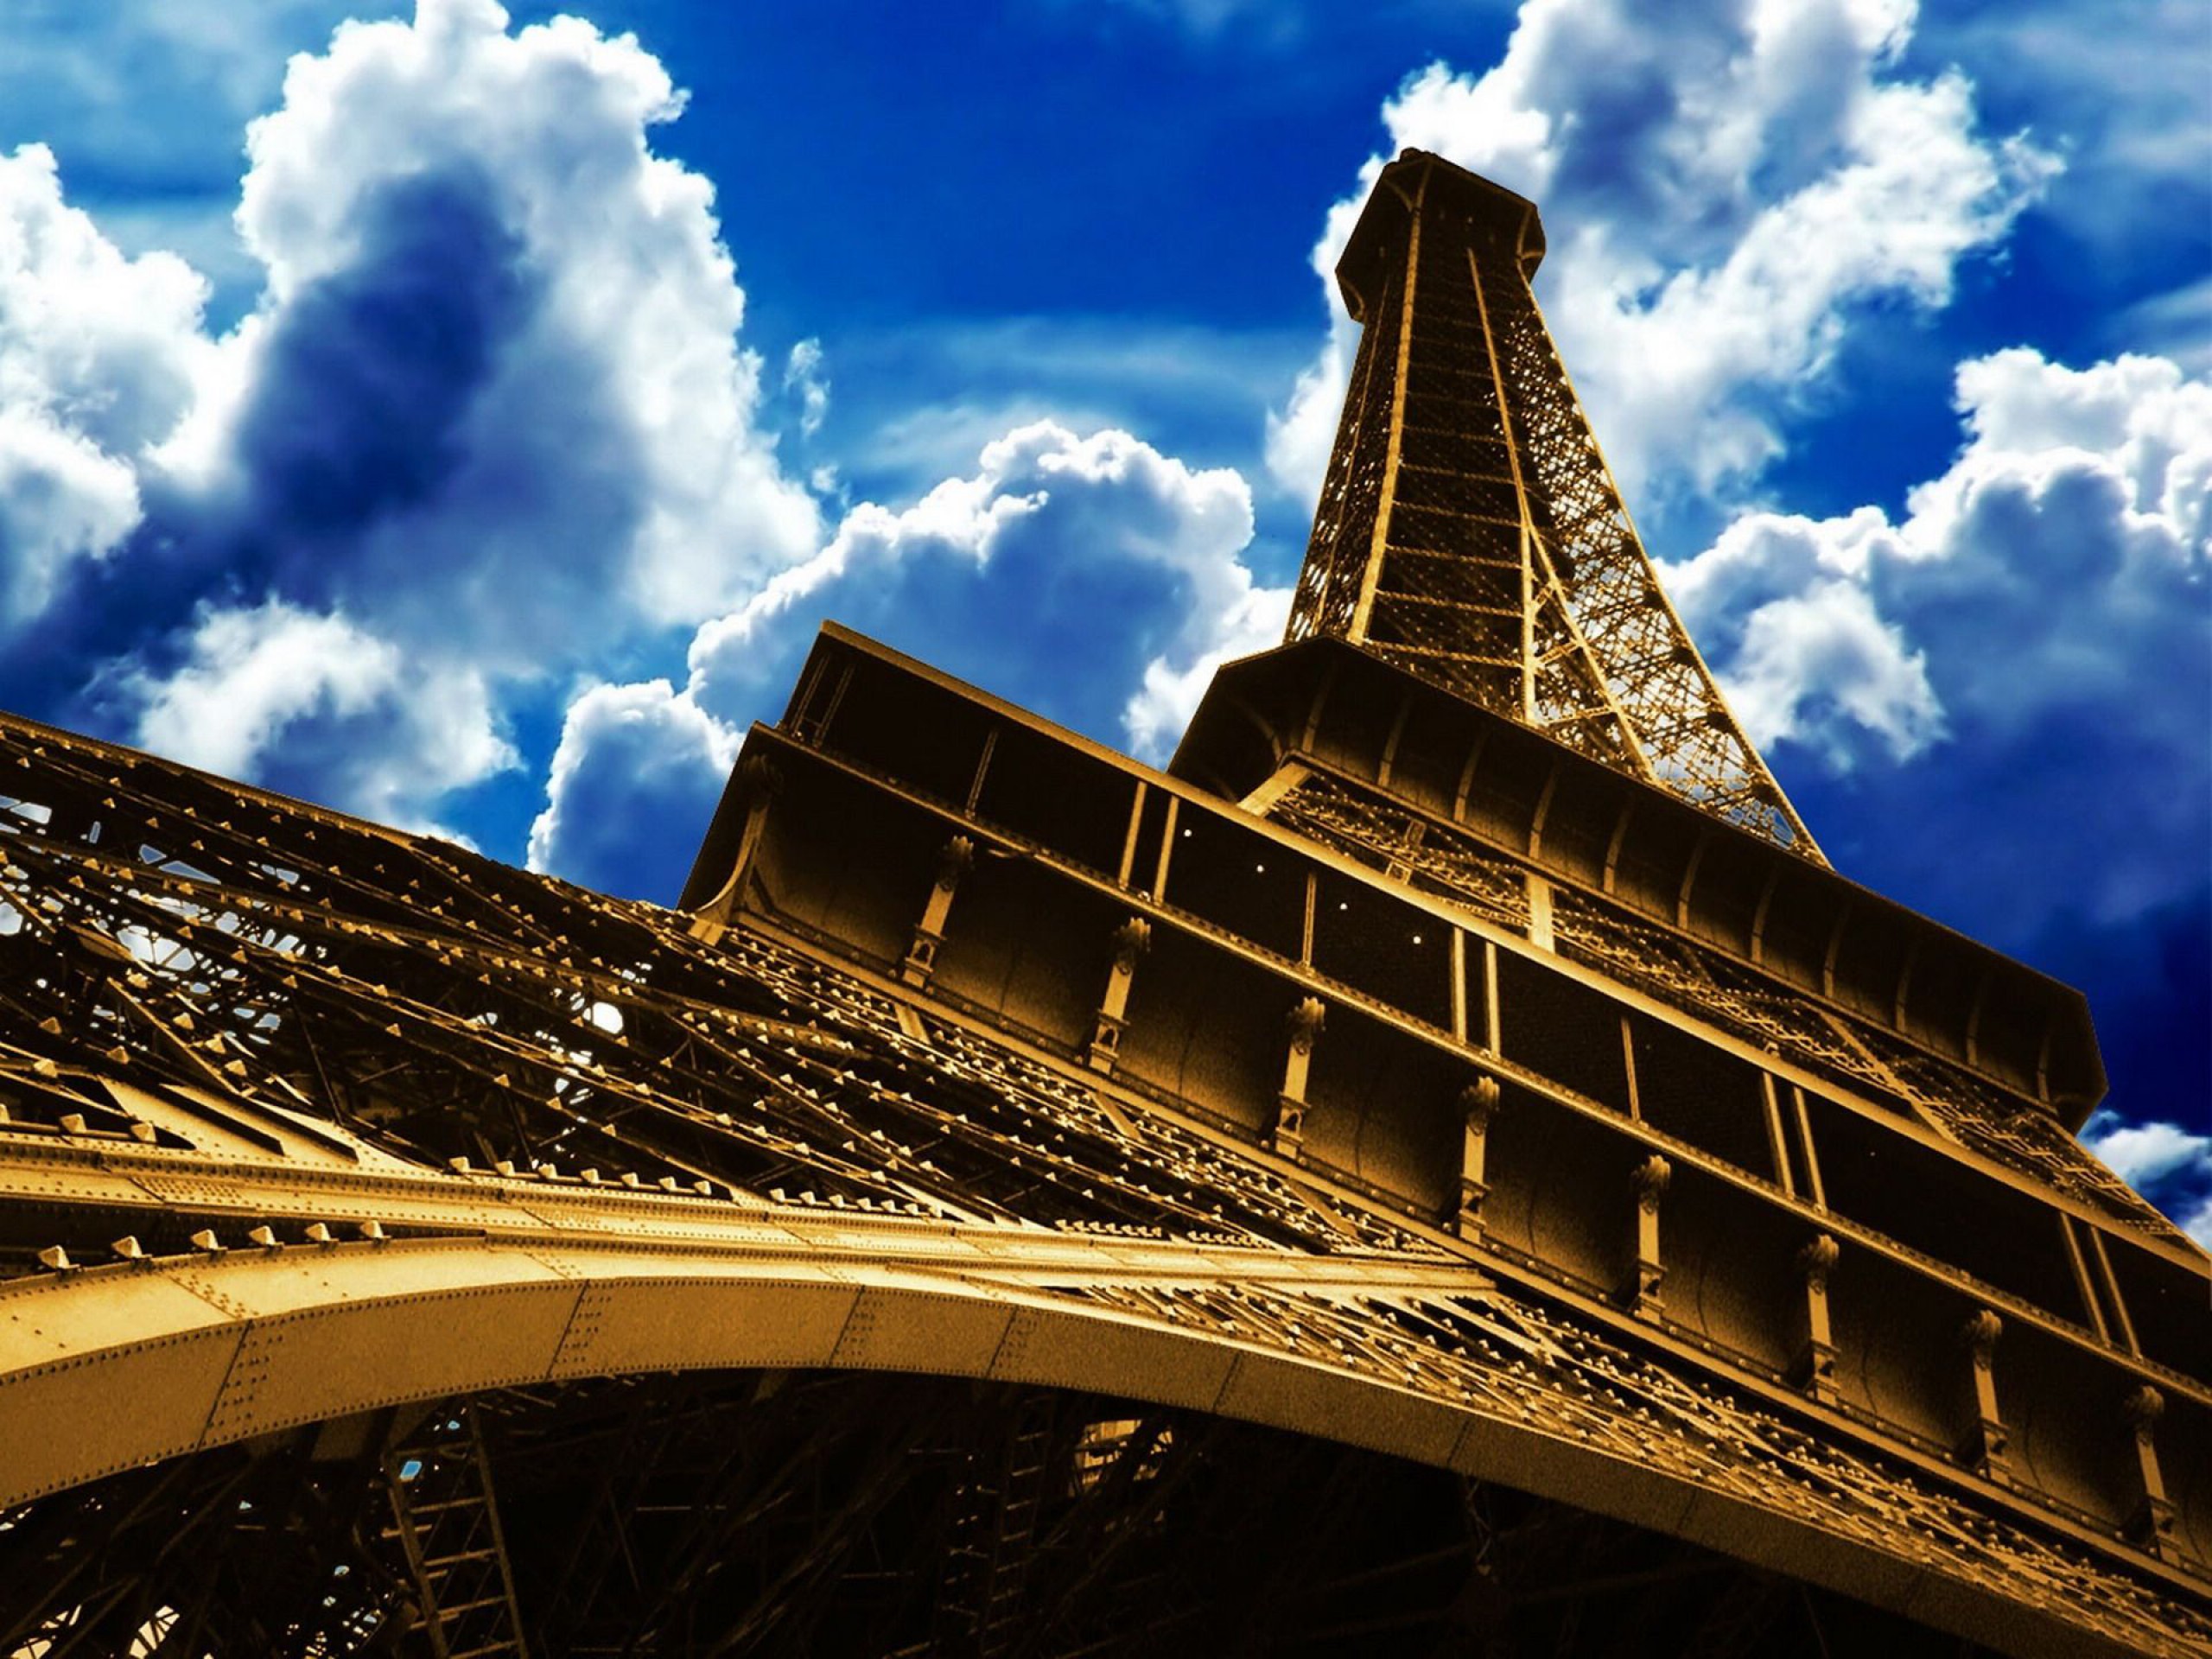 Картинки для печати высокое разрешение. Эйфелева башня в Париже. Картинки на рабочий стол. Обои на рабочий стол архитектура.